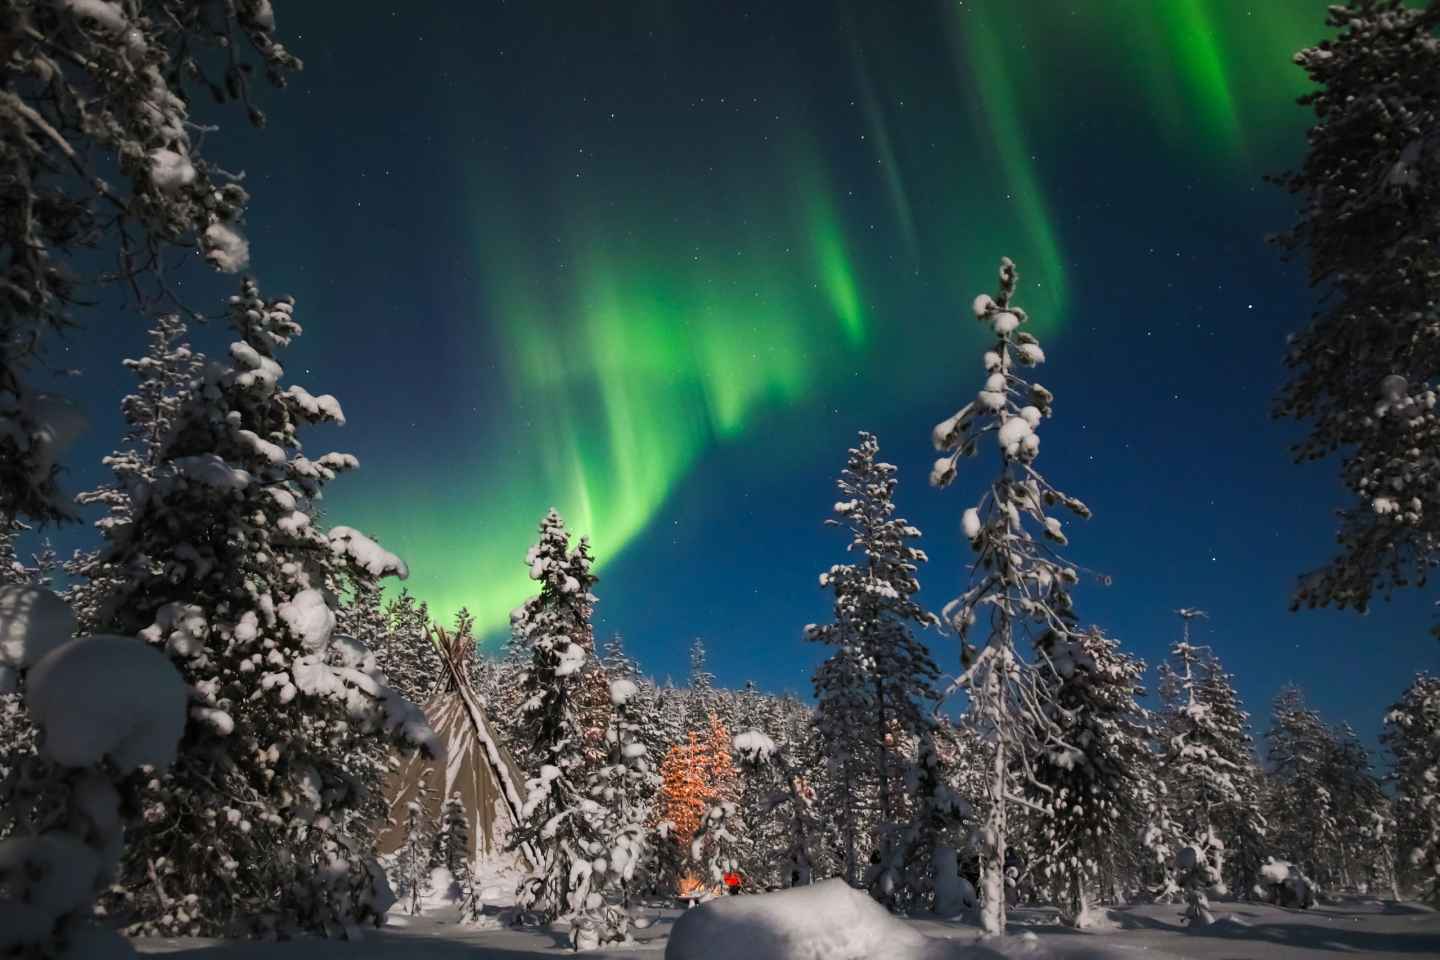 Saariselkä: Northern Lights Hunting by Snowshoes